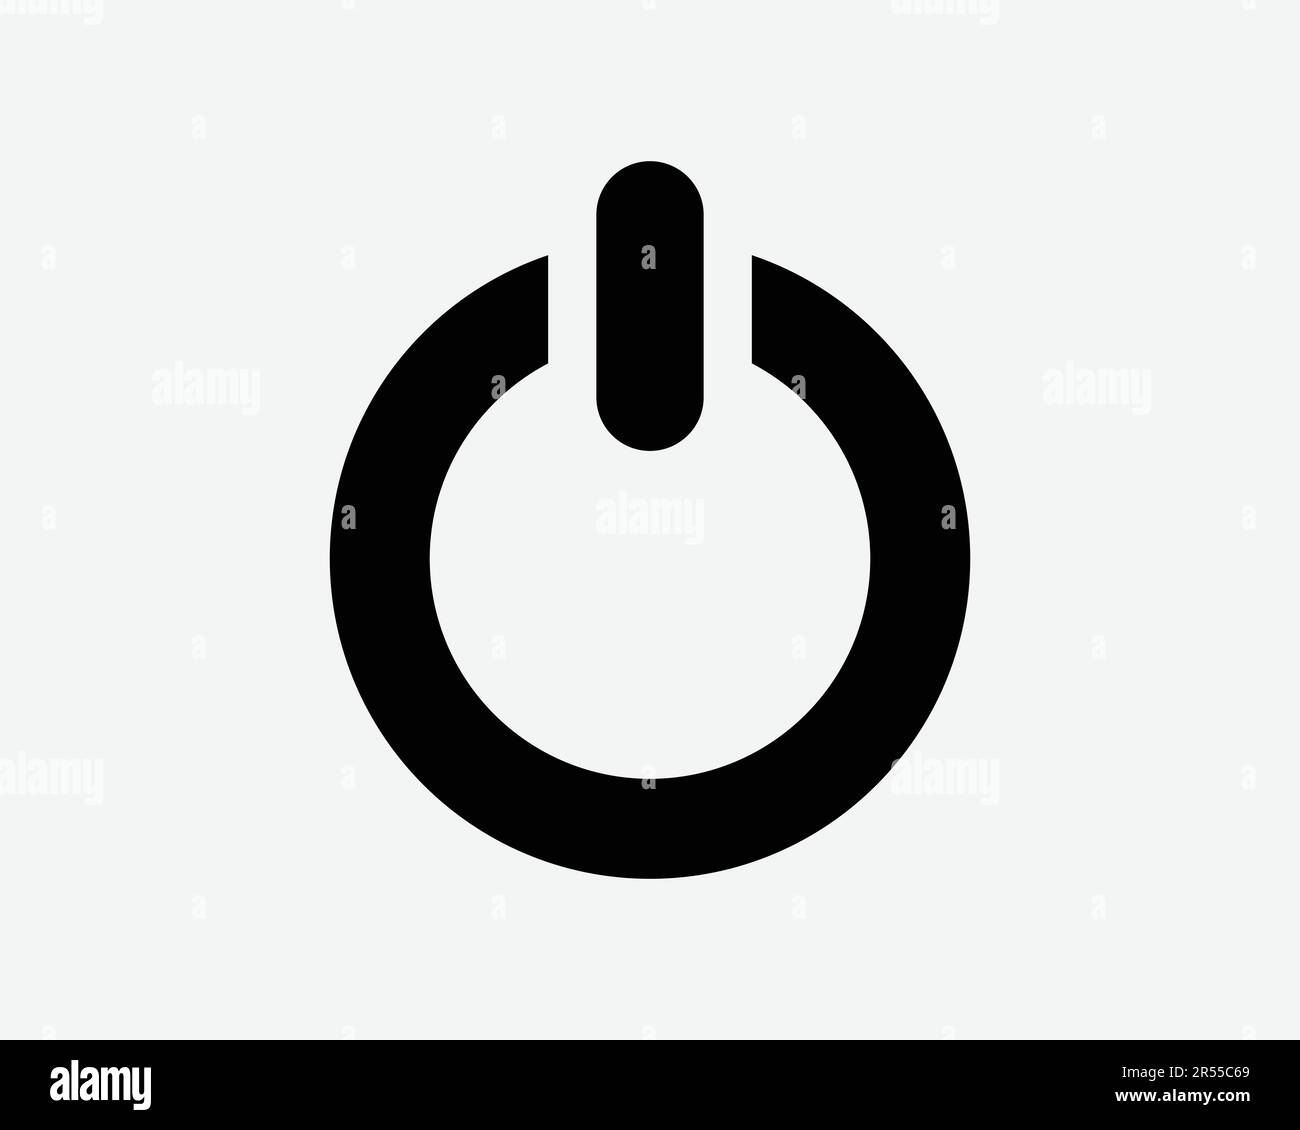 On Off icona di alimentazione. Pulsante Start Stop Switch computer Shutdown Round Shape Outline Sign Symbol Black Artwork Graphic Illustration Clipart EPS Vector Illustrazione Vettoriale